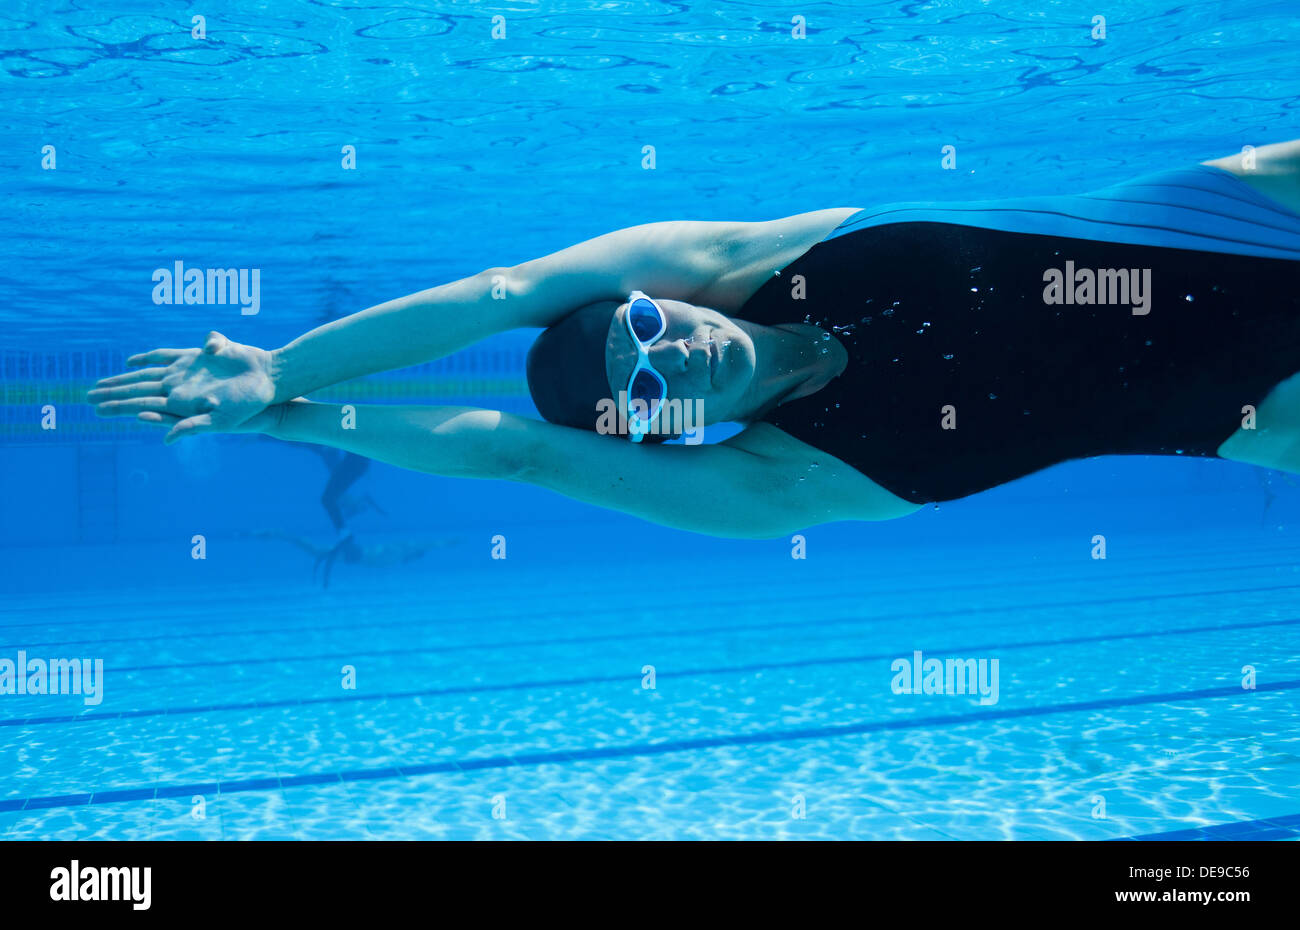 La nageuse en position latérale sous l'eau à la piscine Banque D'Images